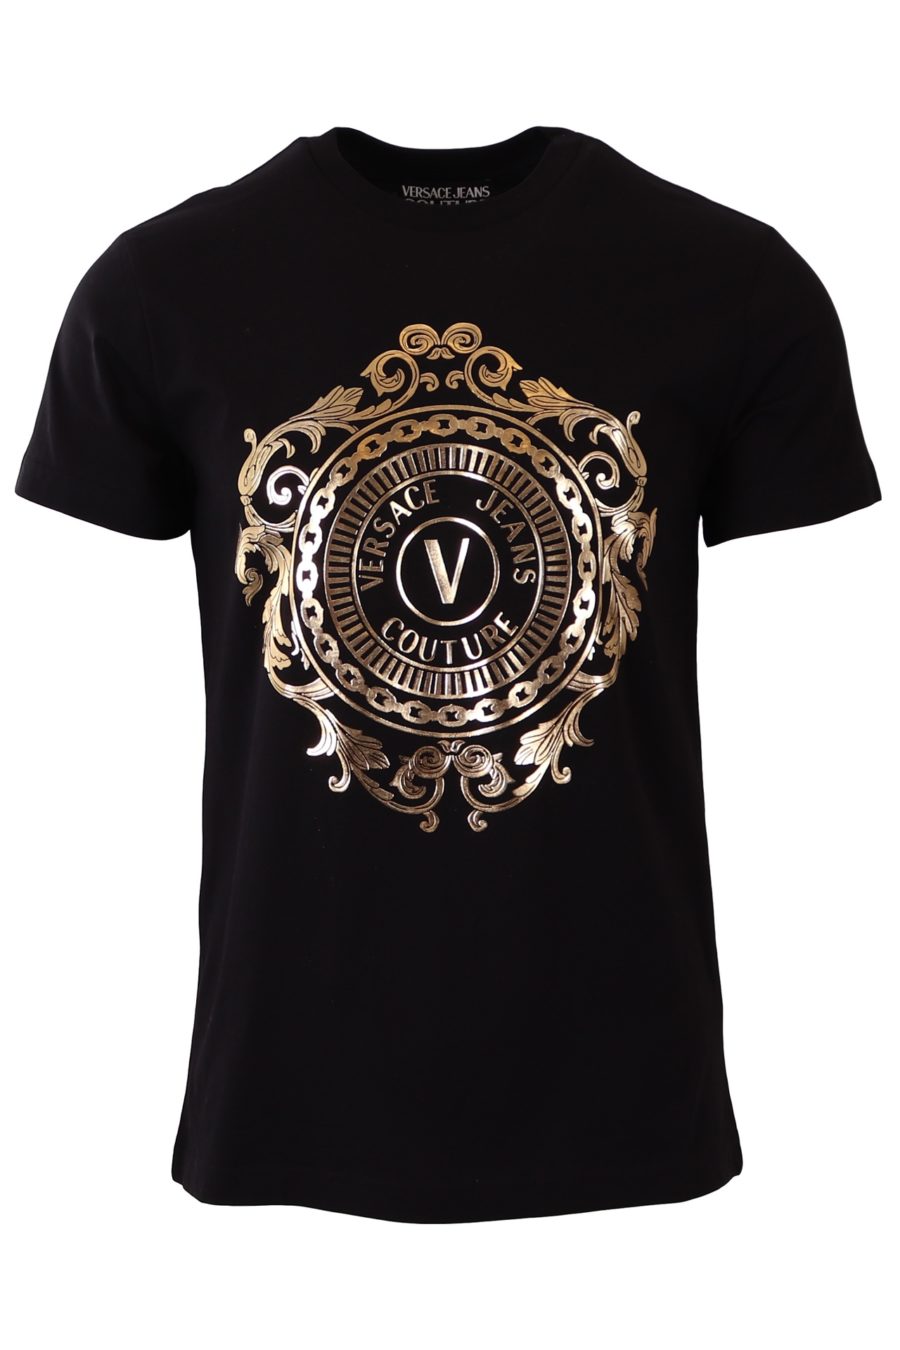 T-shirt Versace Jeans Couture preta com logótipo barroco dourado - 43f81fccbee6e07466f1cba1d629313ead9483ba